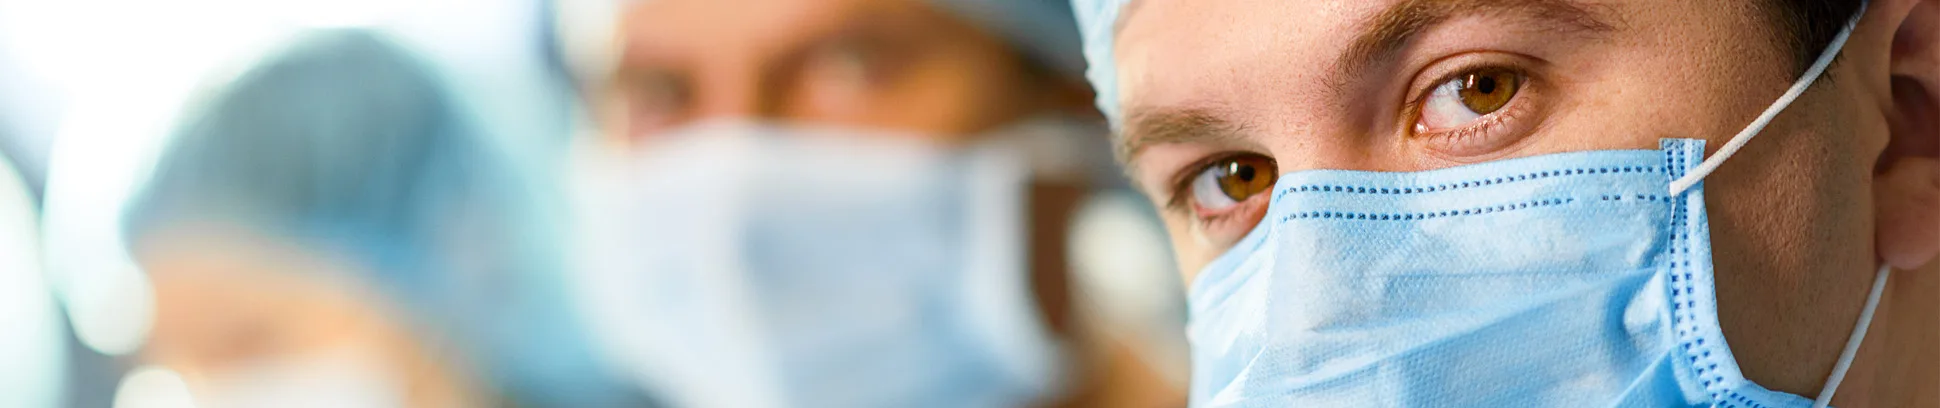 Cirugía ambulatoria en Dávila: alta el mismo día de la intervención